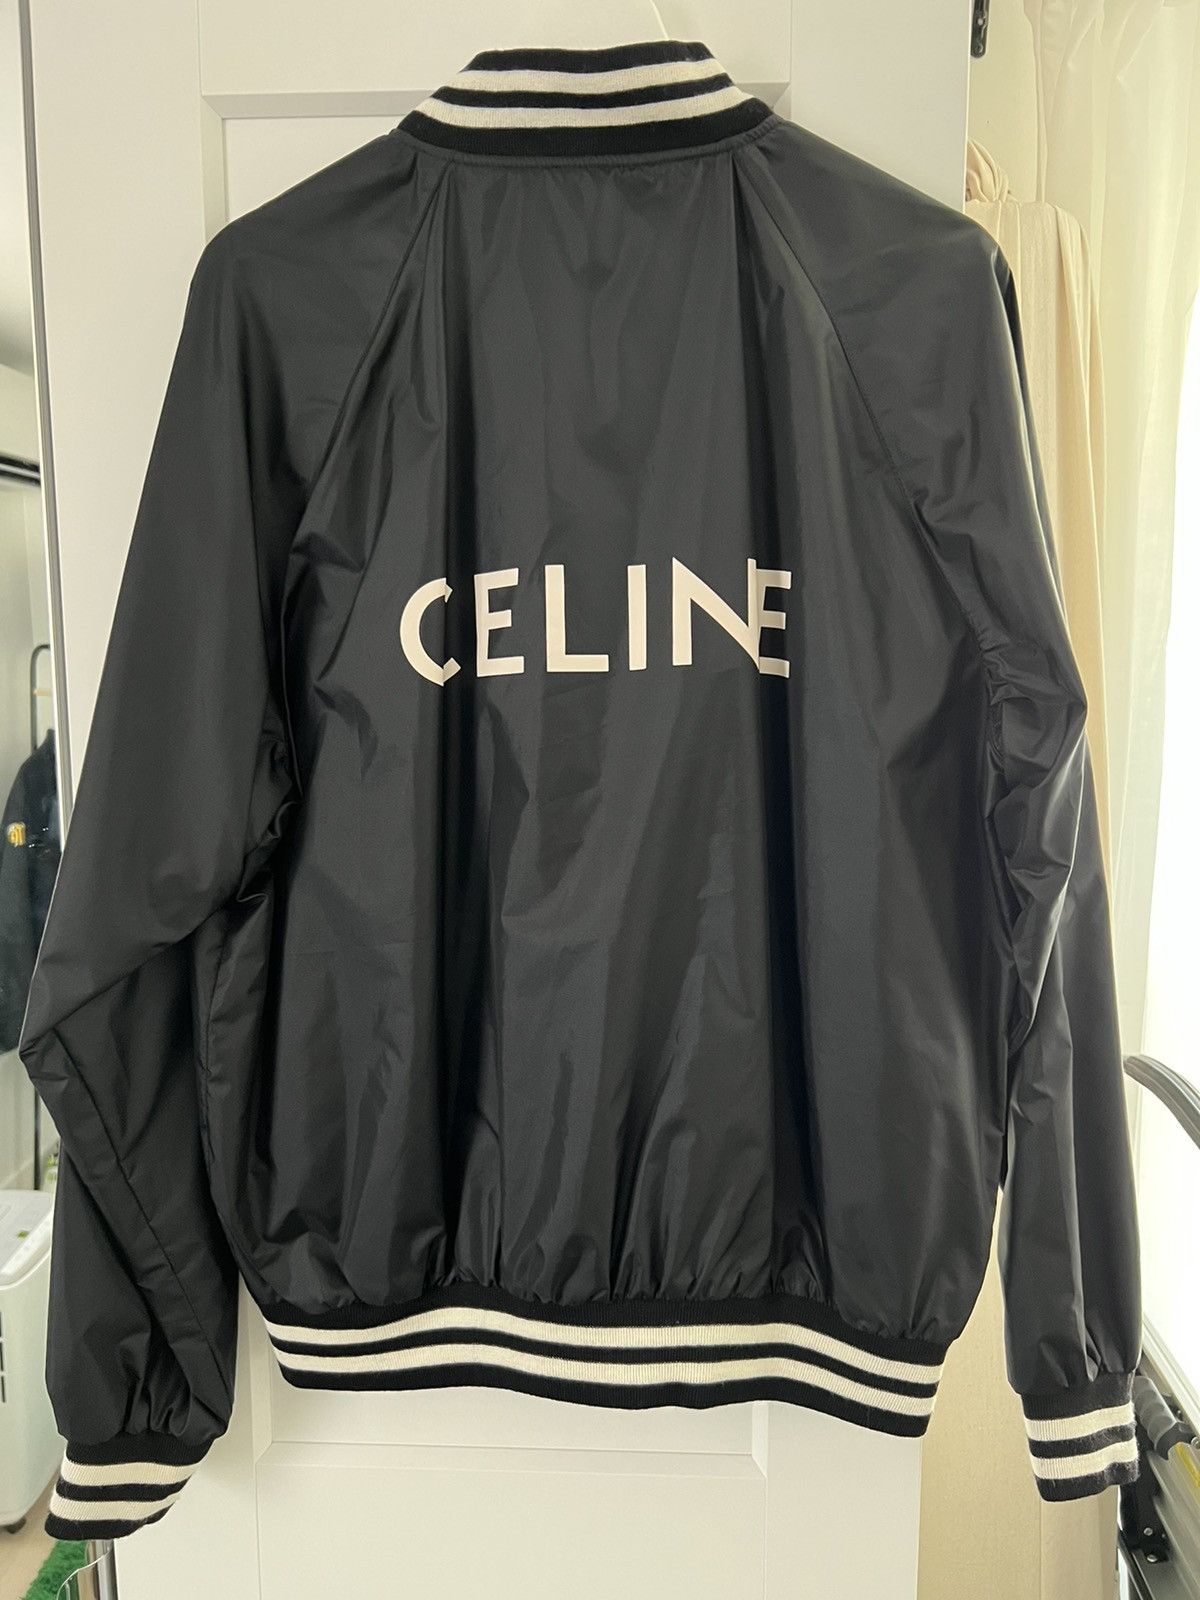 Celine Celine Track Jacket | Grailed